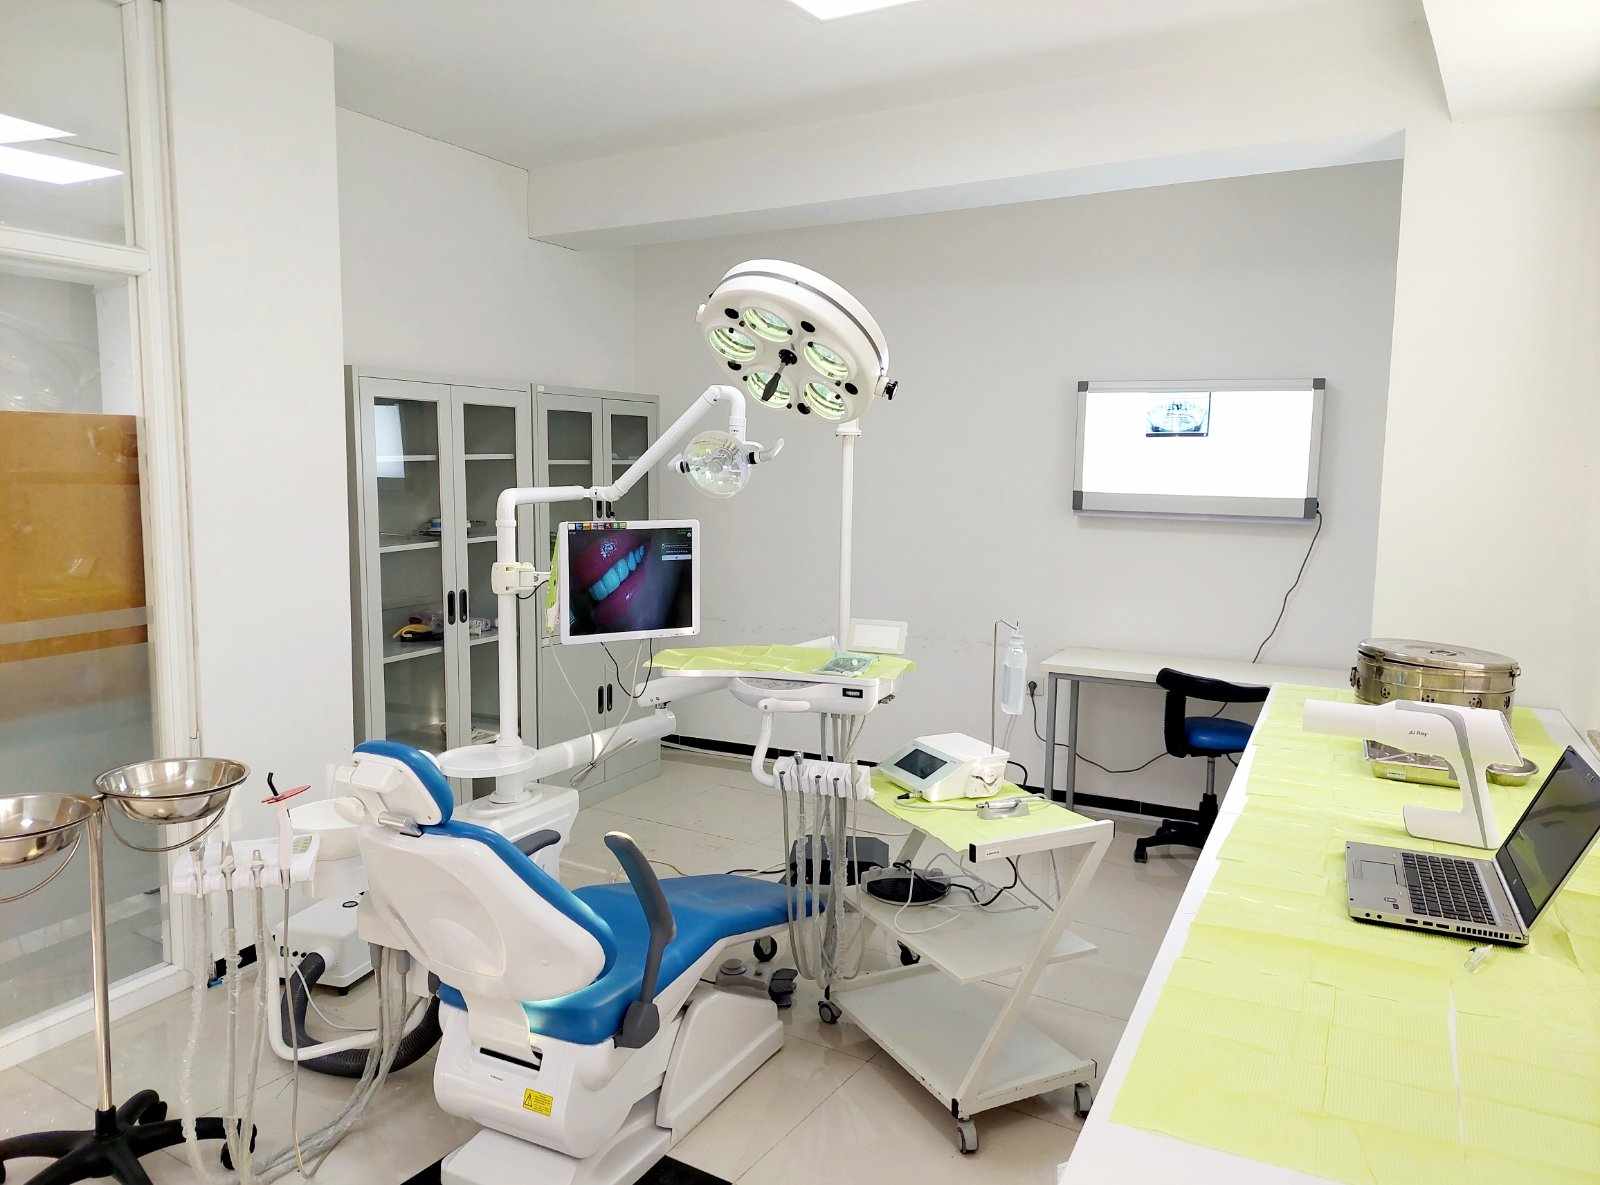 UBT kompleton Poliklinikën Stomatologjike me sallën kirurgjike – nga janari ofron shërbime të reja specialistike